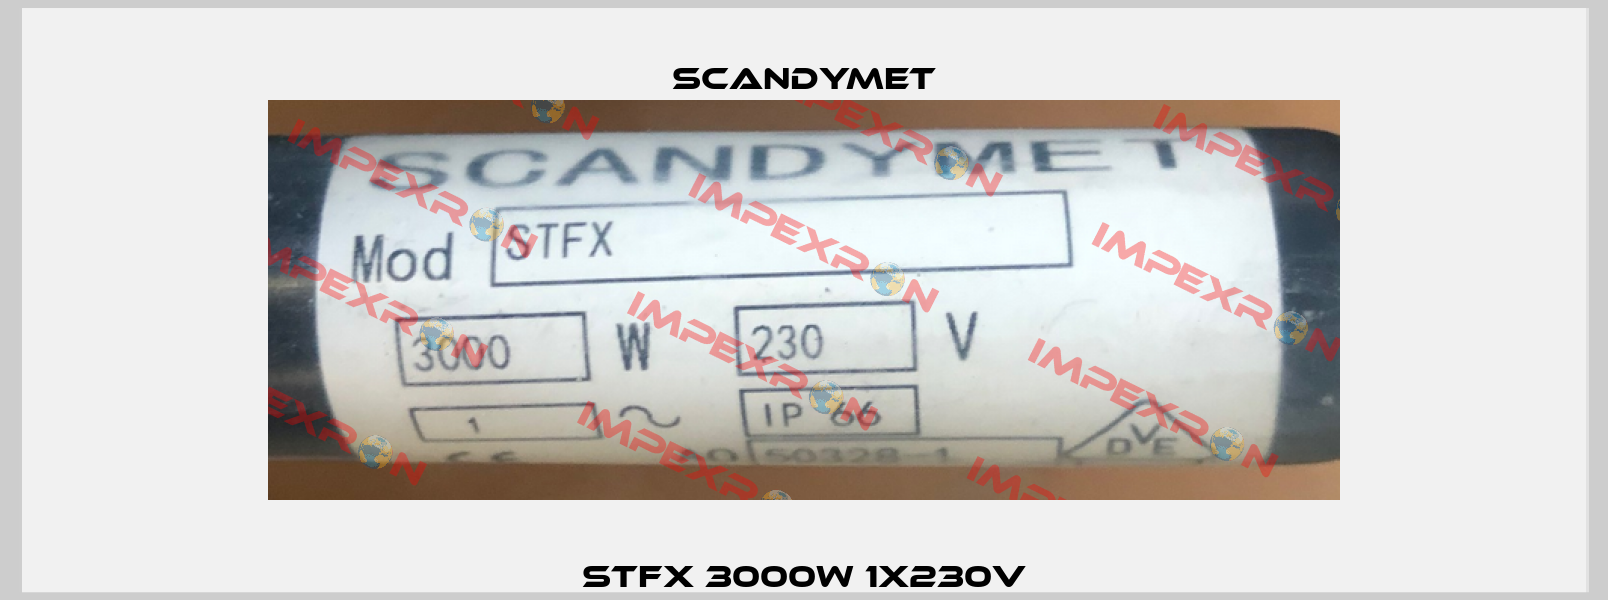 STFX 3000W 1x230V SCANDYMET